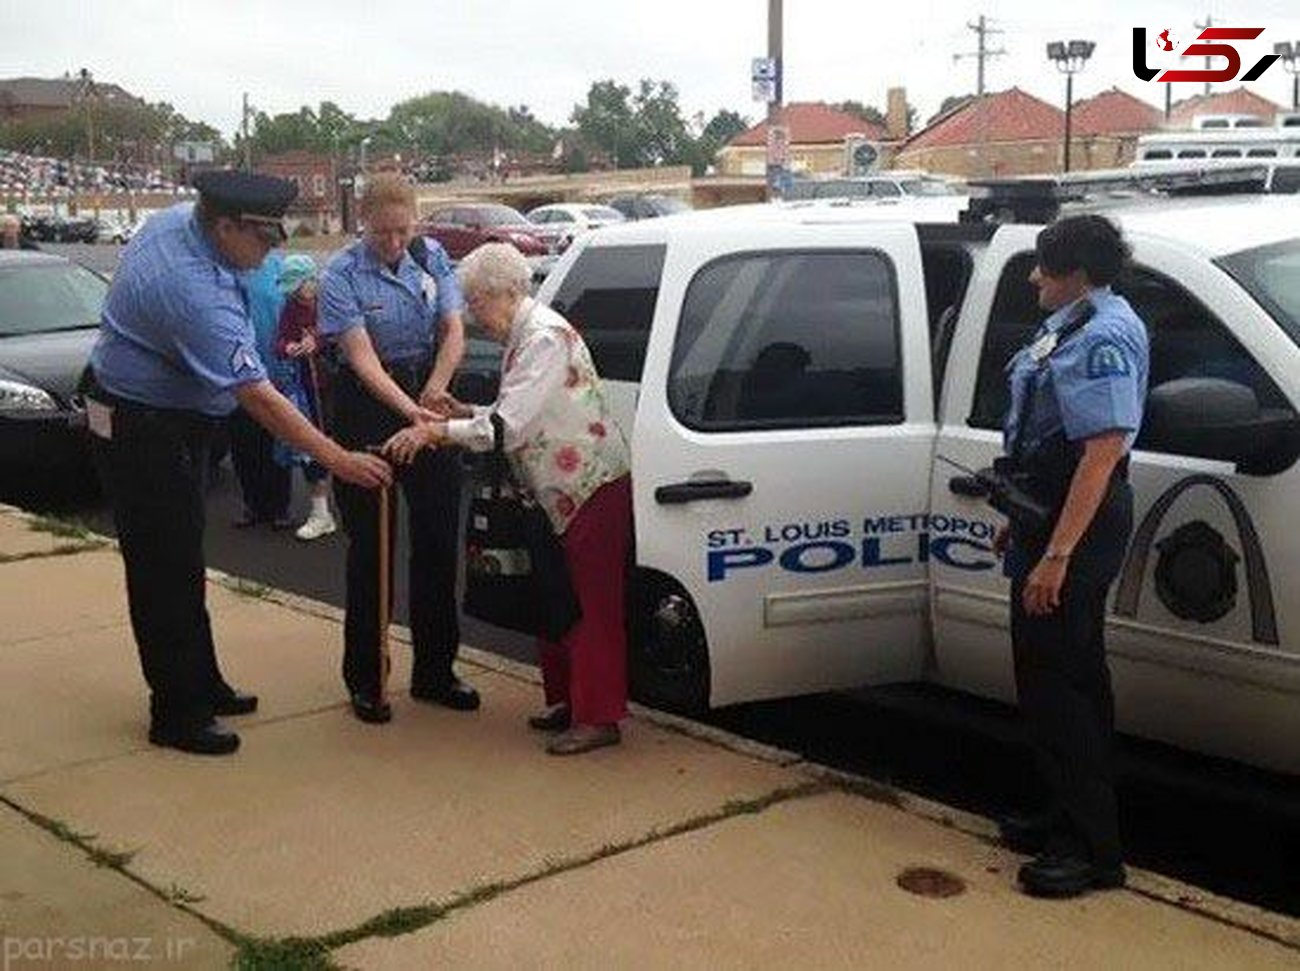 این پیرزن 102 ساله نیکوکار به خاطر جوراب رنگی دستگیر شد+عکس